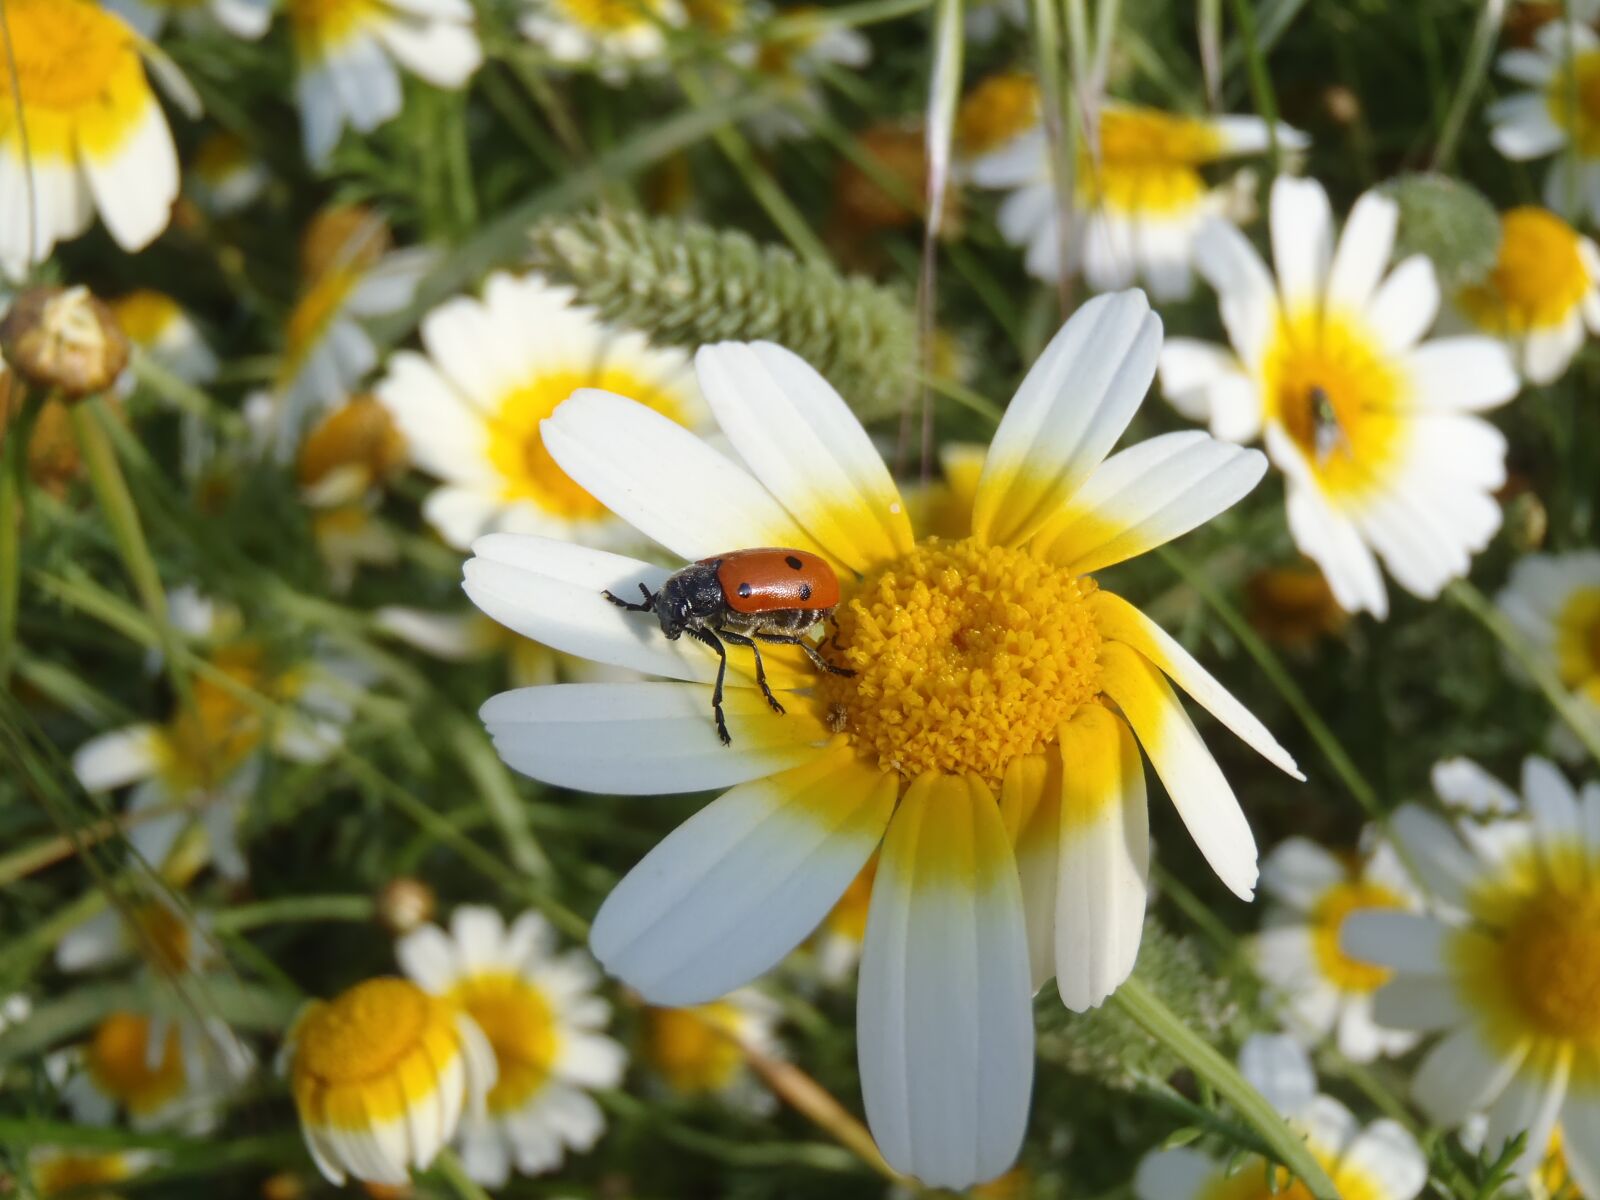 Olympus uTough-8010 sample photo. Daisy, ladybug, flowers photography